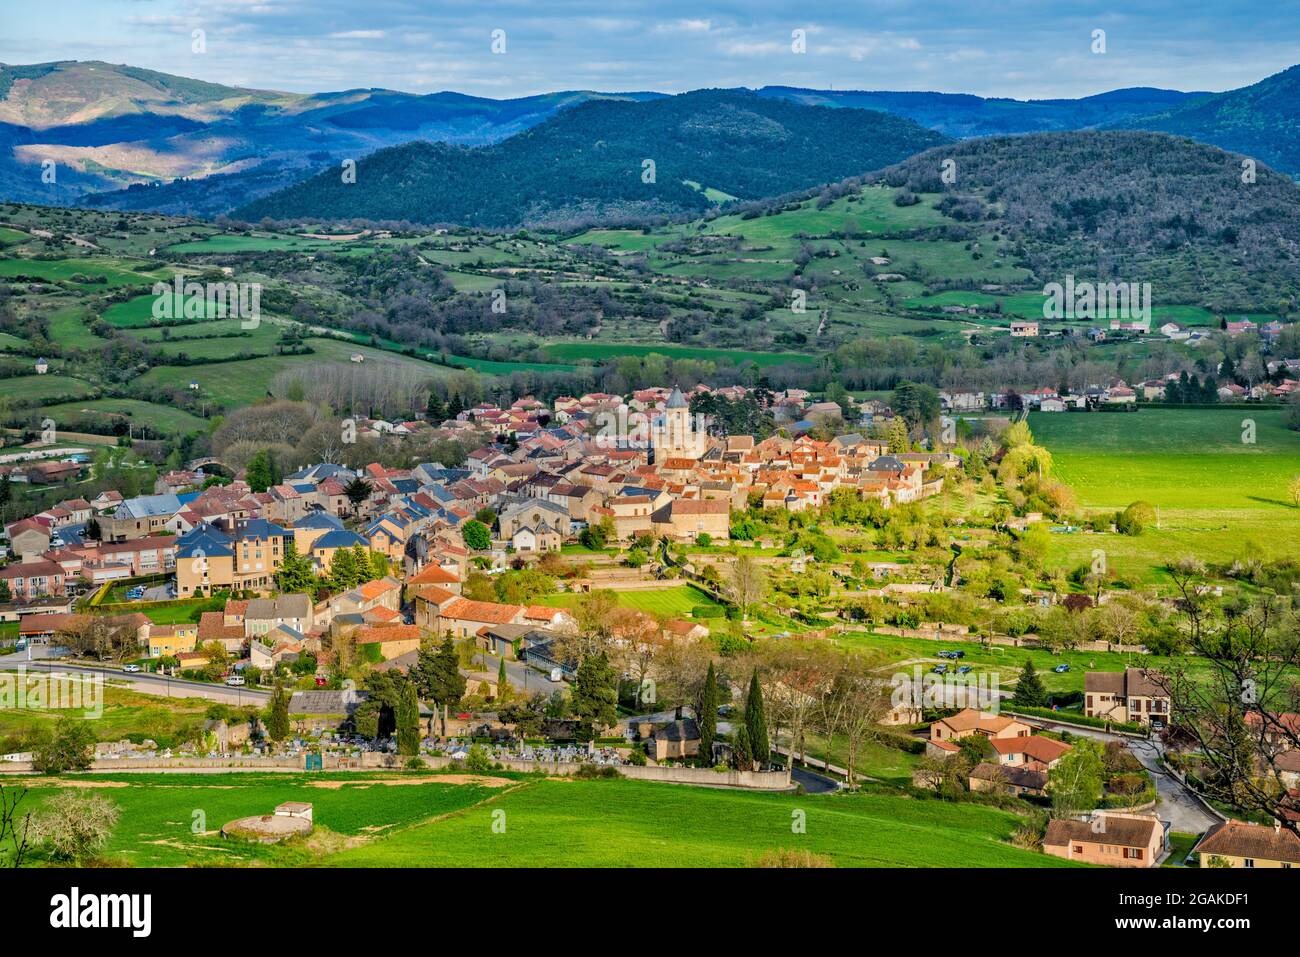 Vue générale de la ville de Nant, commune dans le département de l'Aveyron, Vallée de la Dourbie, région des Causses, région occitanie, France Banque D'Images